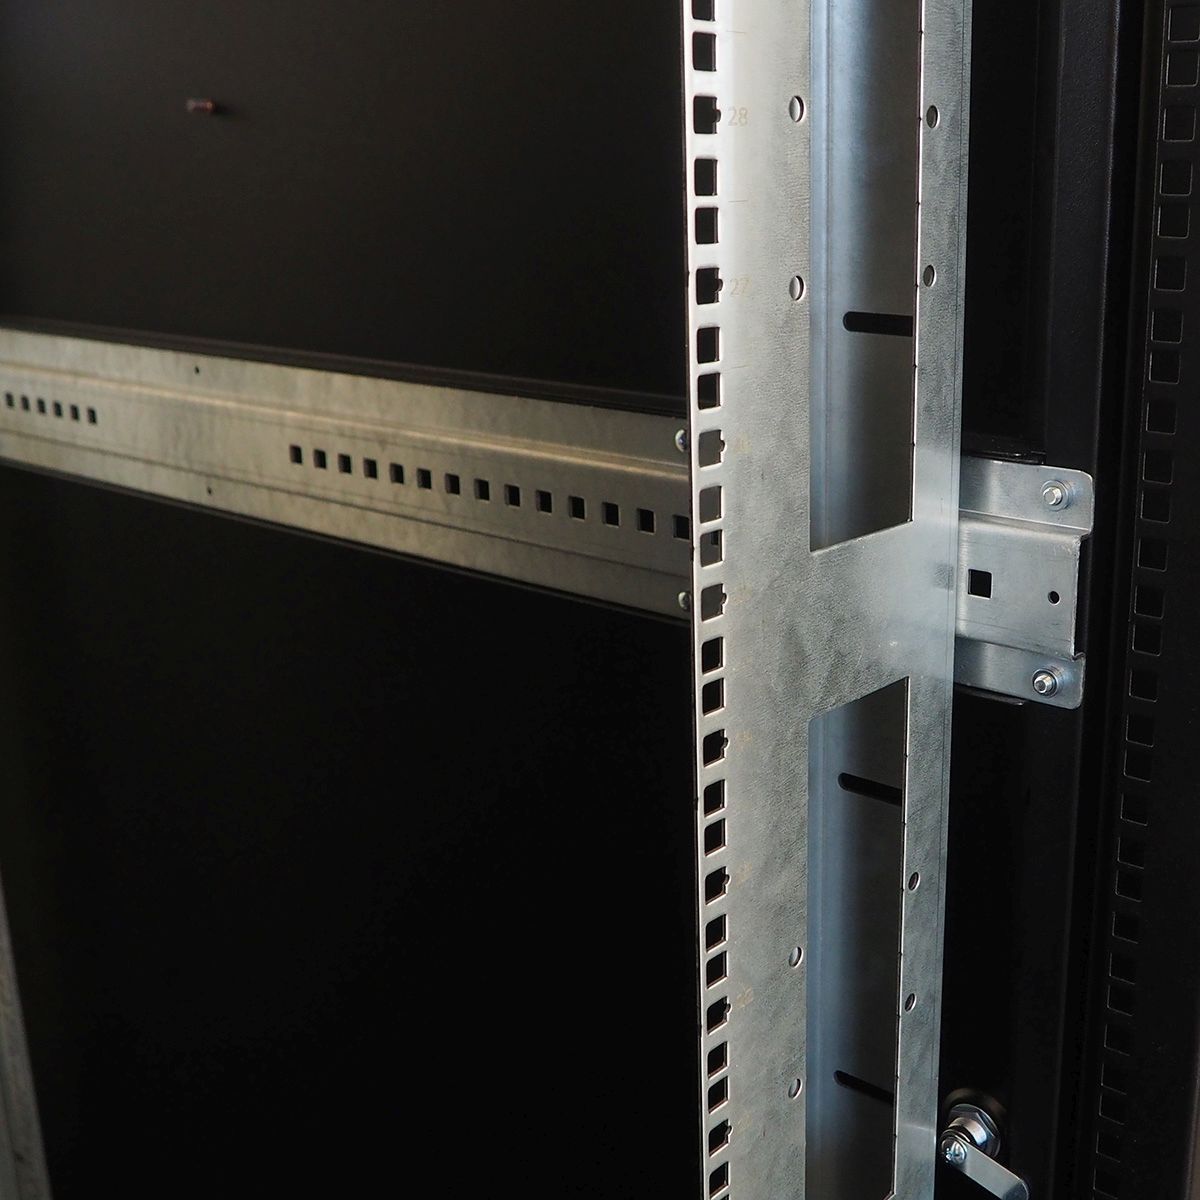 Шкаф серверный напольный 48U (800 × 1200) дверь перфорированная, задние двойные перф., цвет черный